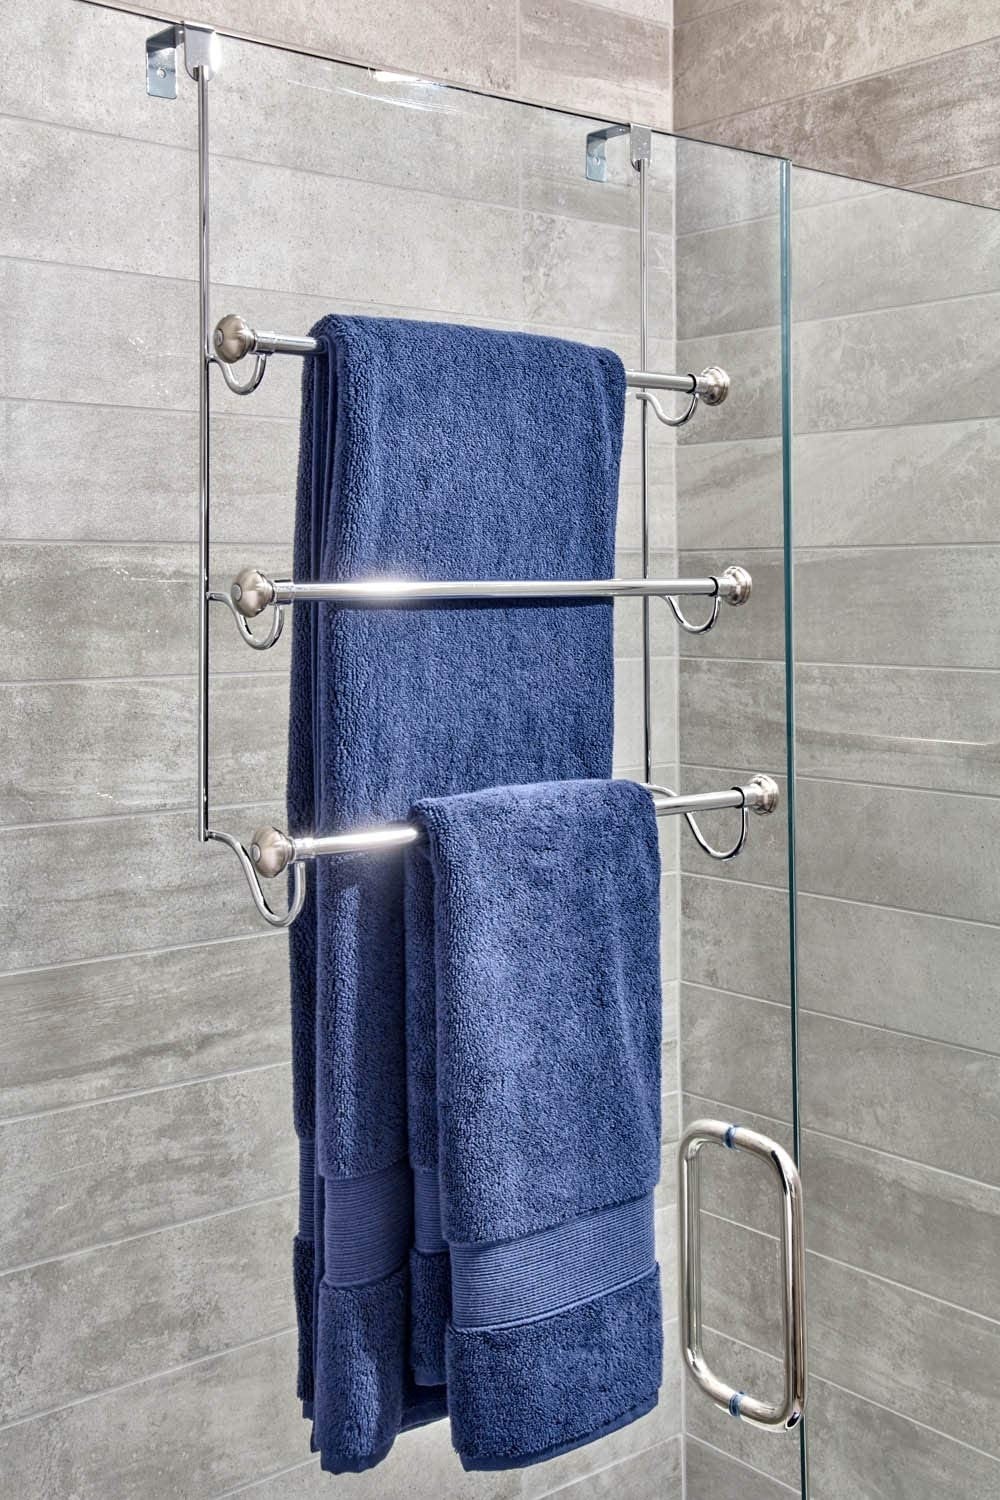 Idesign york over the shower door towel rack for bathroom